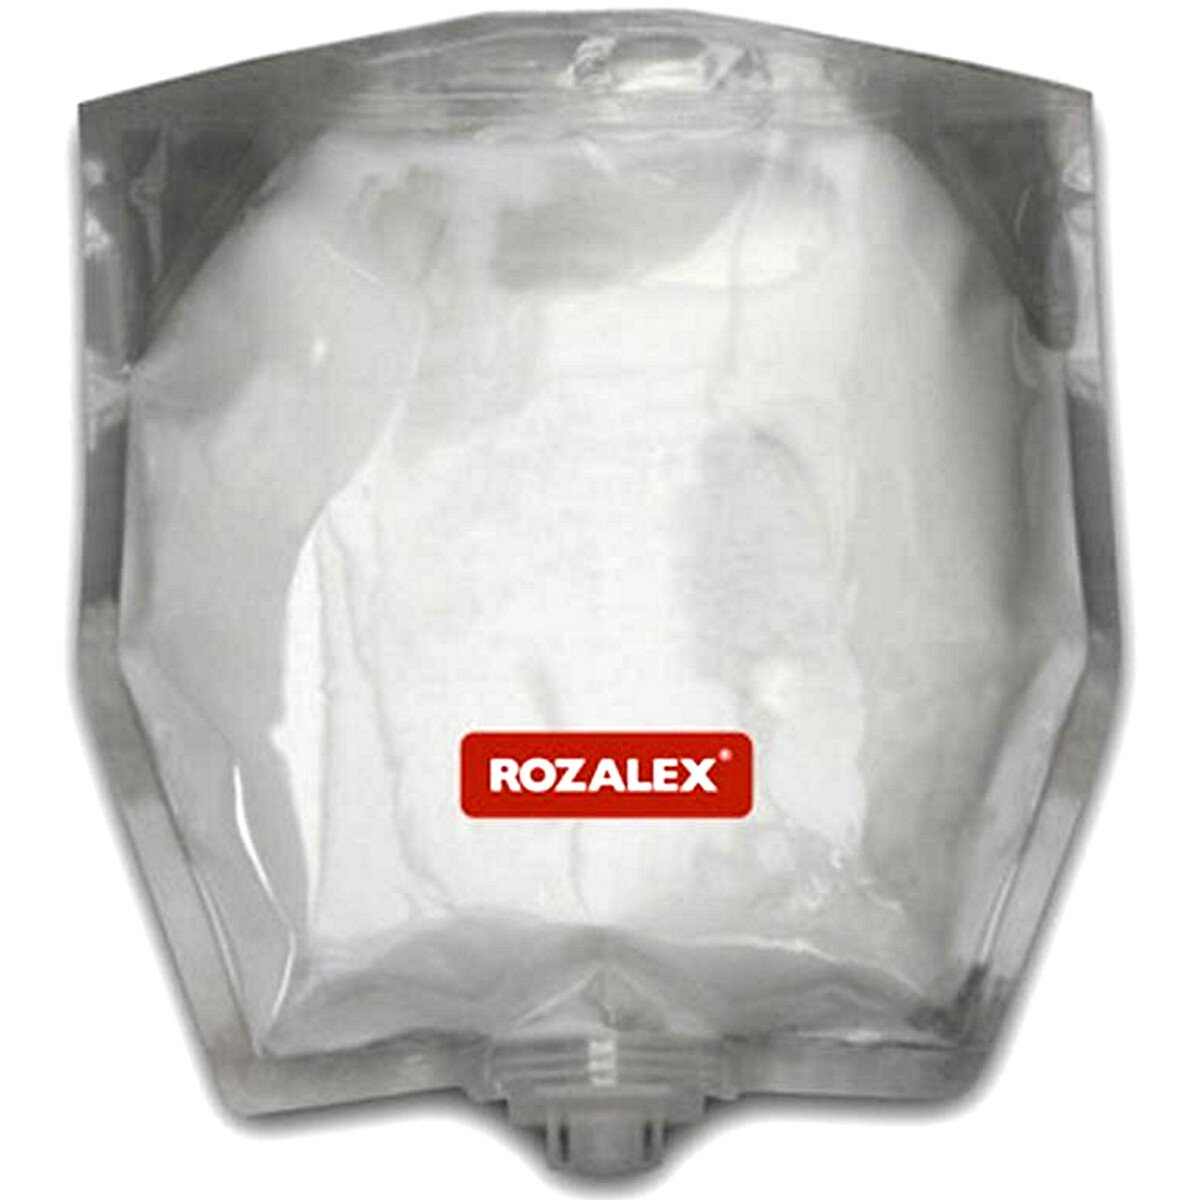 Rozalex 6063010 XWORX Skin Reconditioning Cream 800ml Refill Pouch